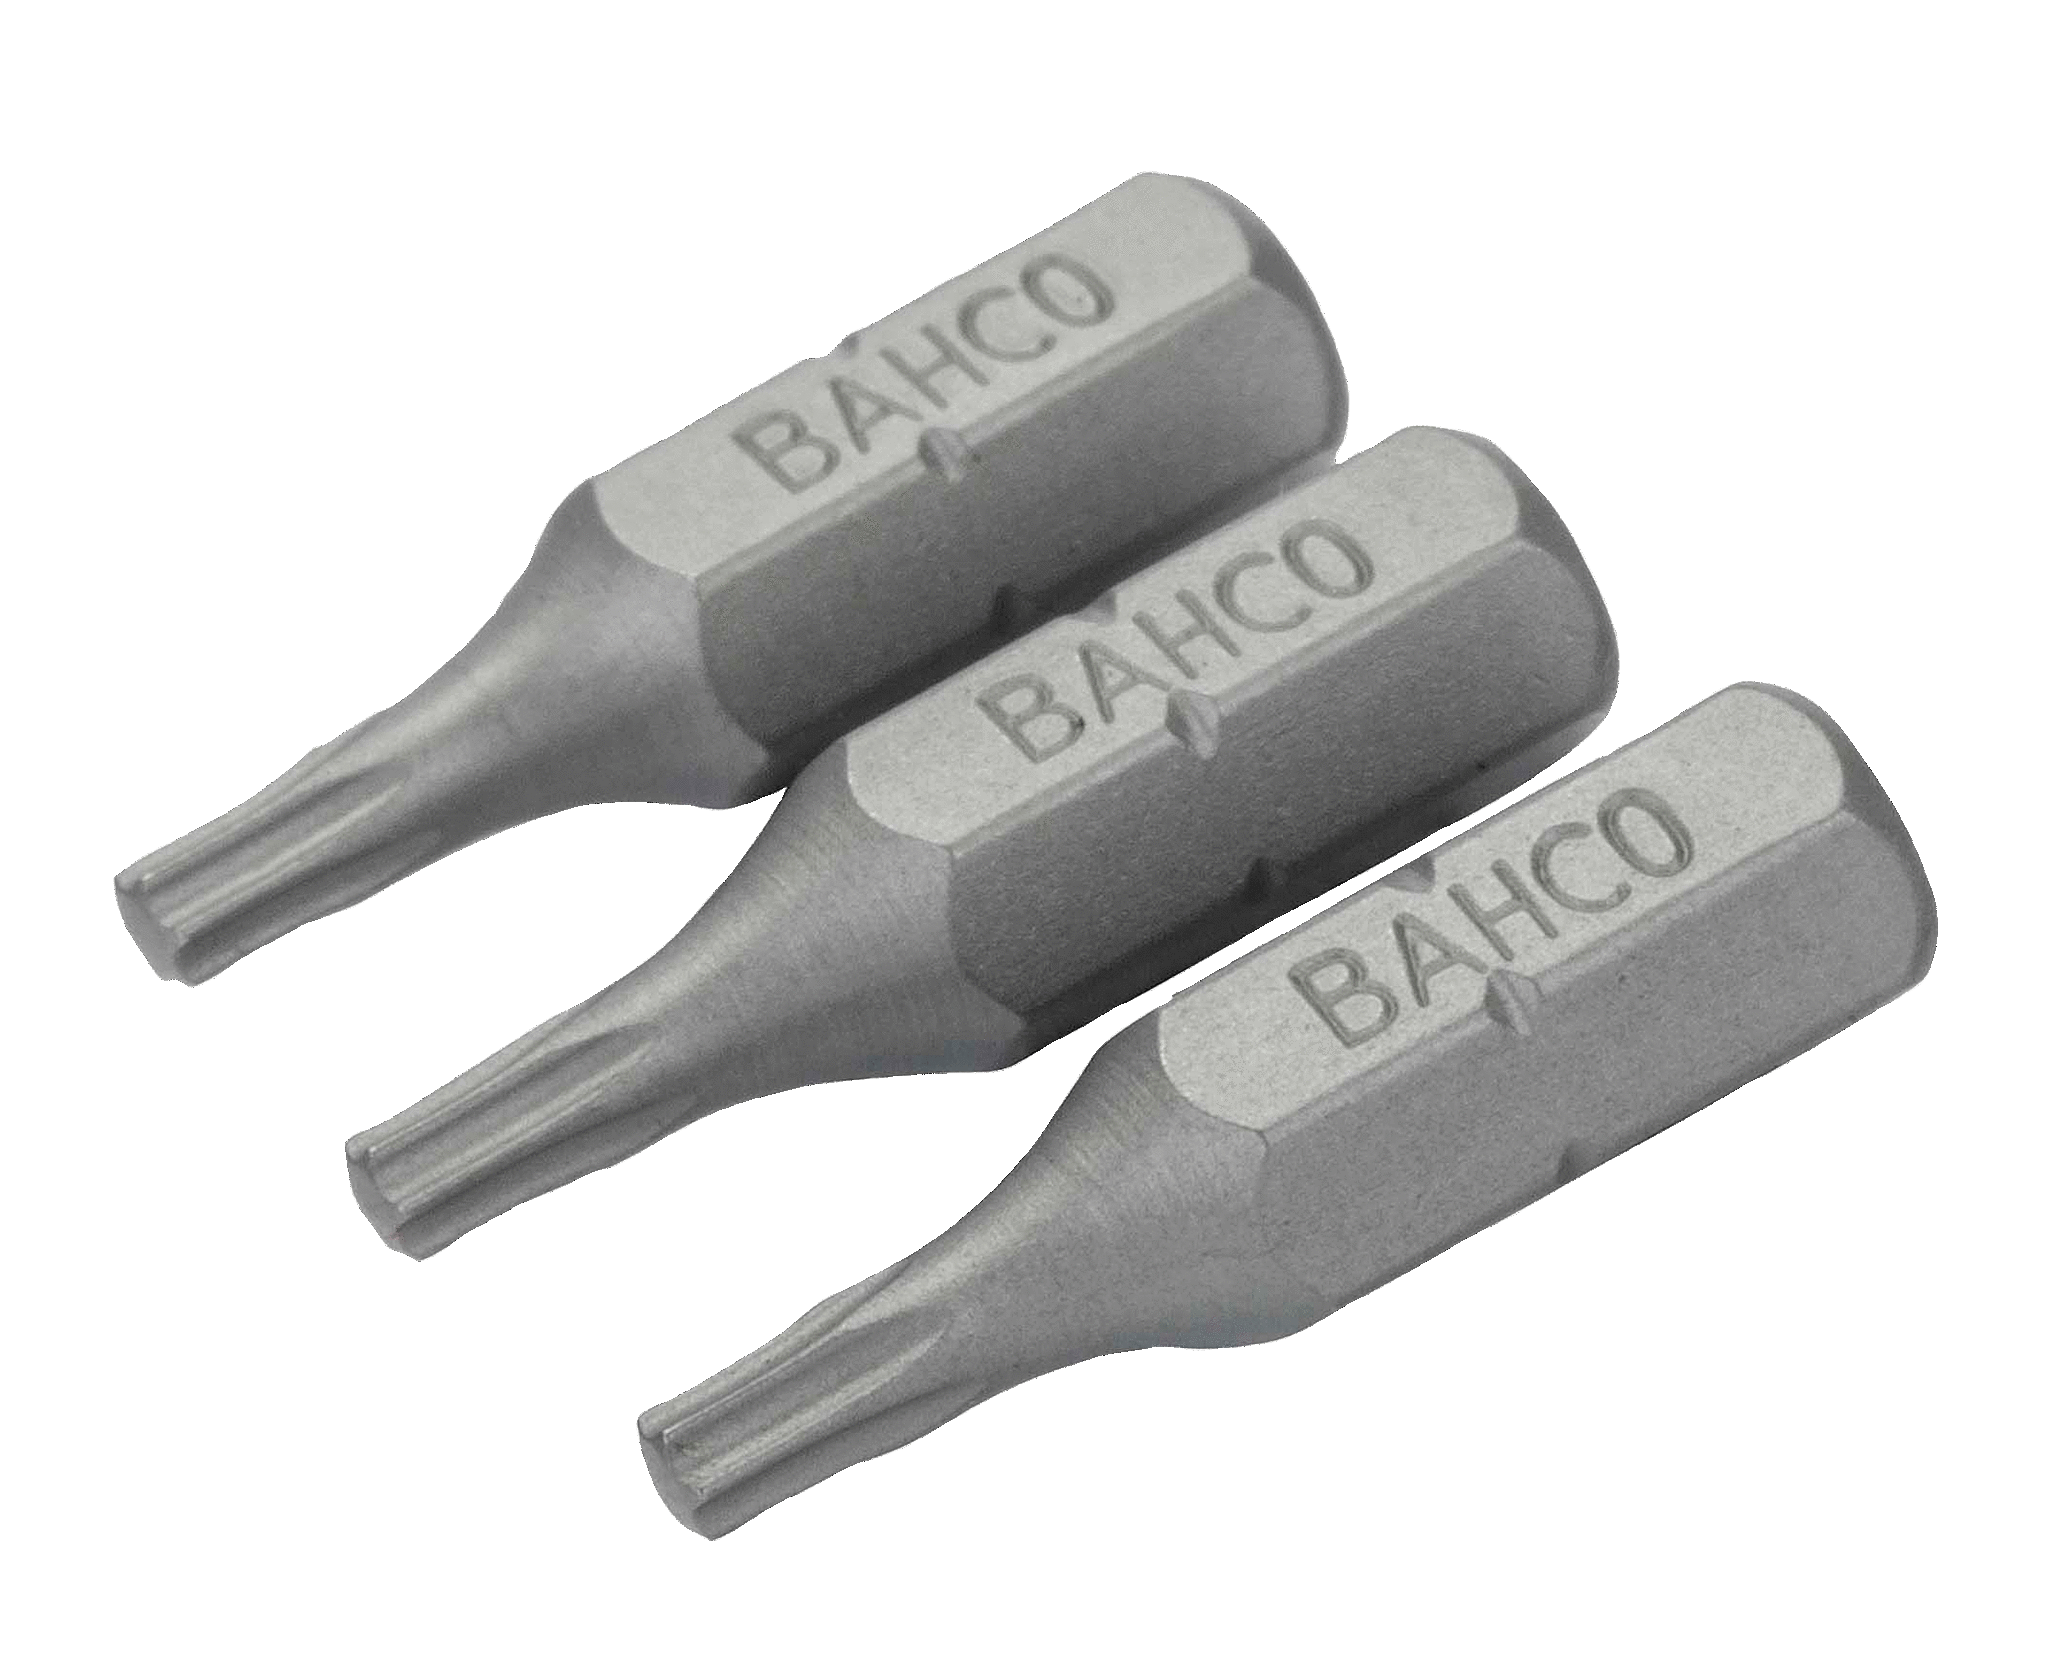 картинка Стандартные биты для отверток Torx®, 25 мм BAHCO 59S/T5-3P от магазина "Элит-инструмент"